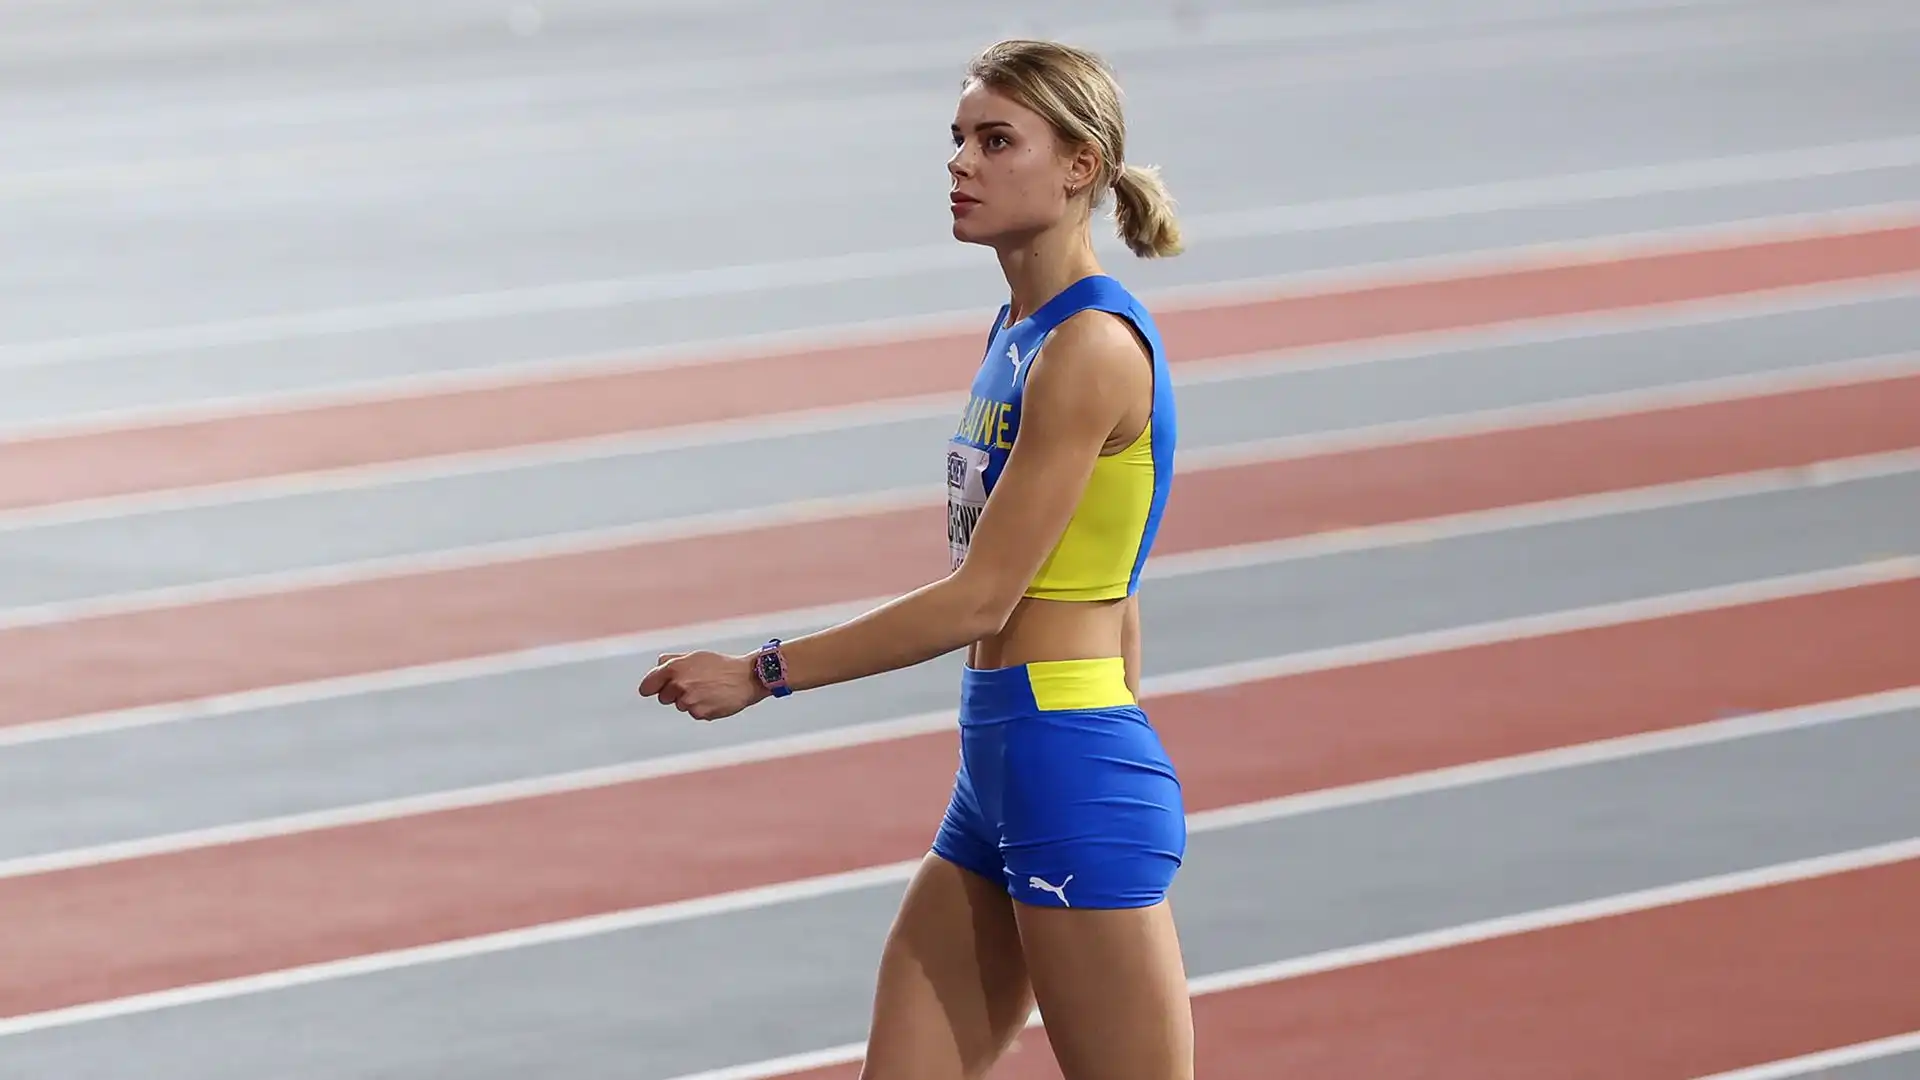 L'atleta 26enne ha vinto cinque titoli nazionali ucraini. Ha vinto un argento ai Mondiali del 2017 a Londra